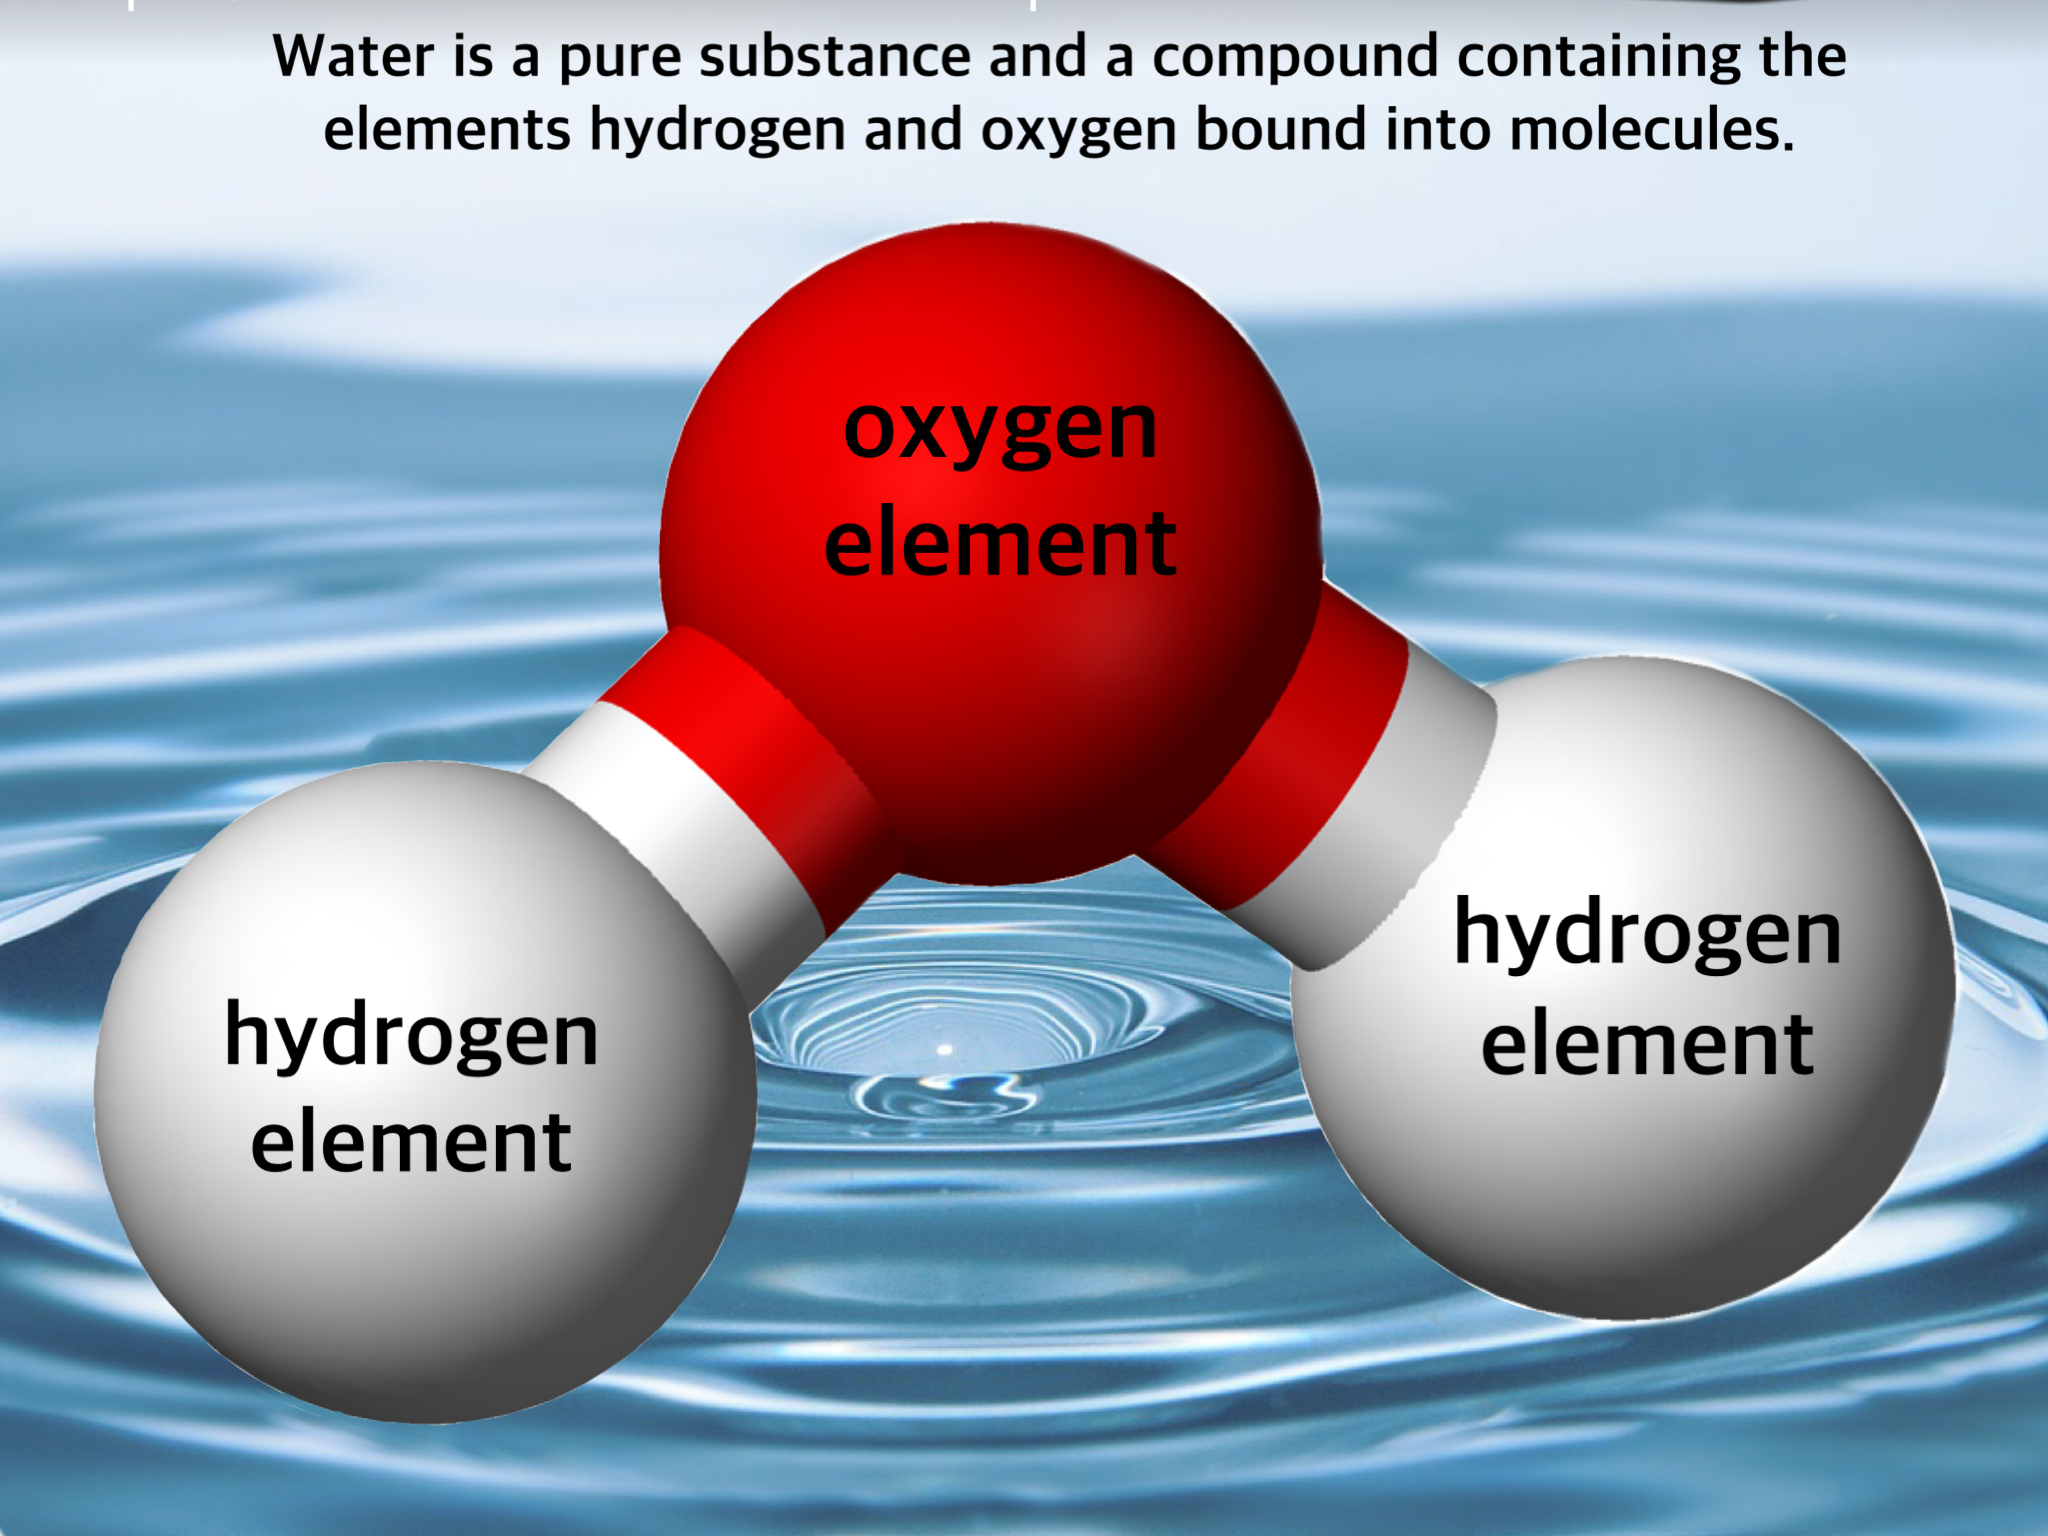 الاكسجين والماء يعتبر والهيدروجين من العناصر